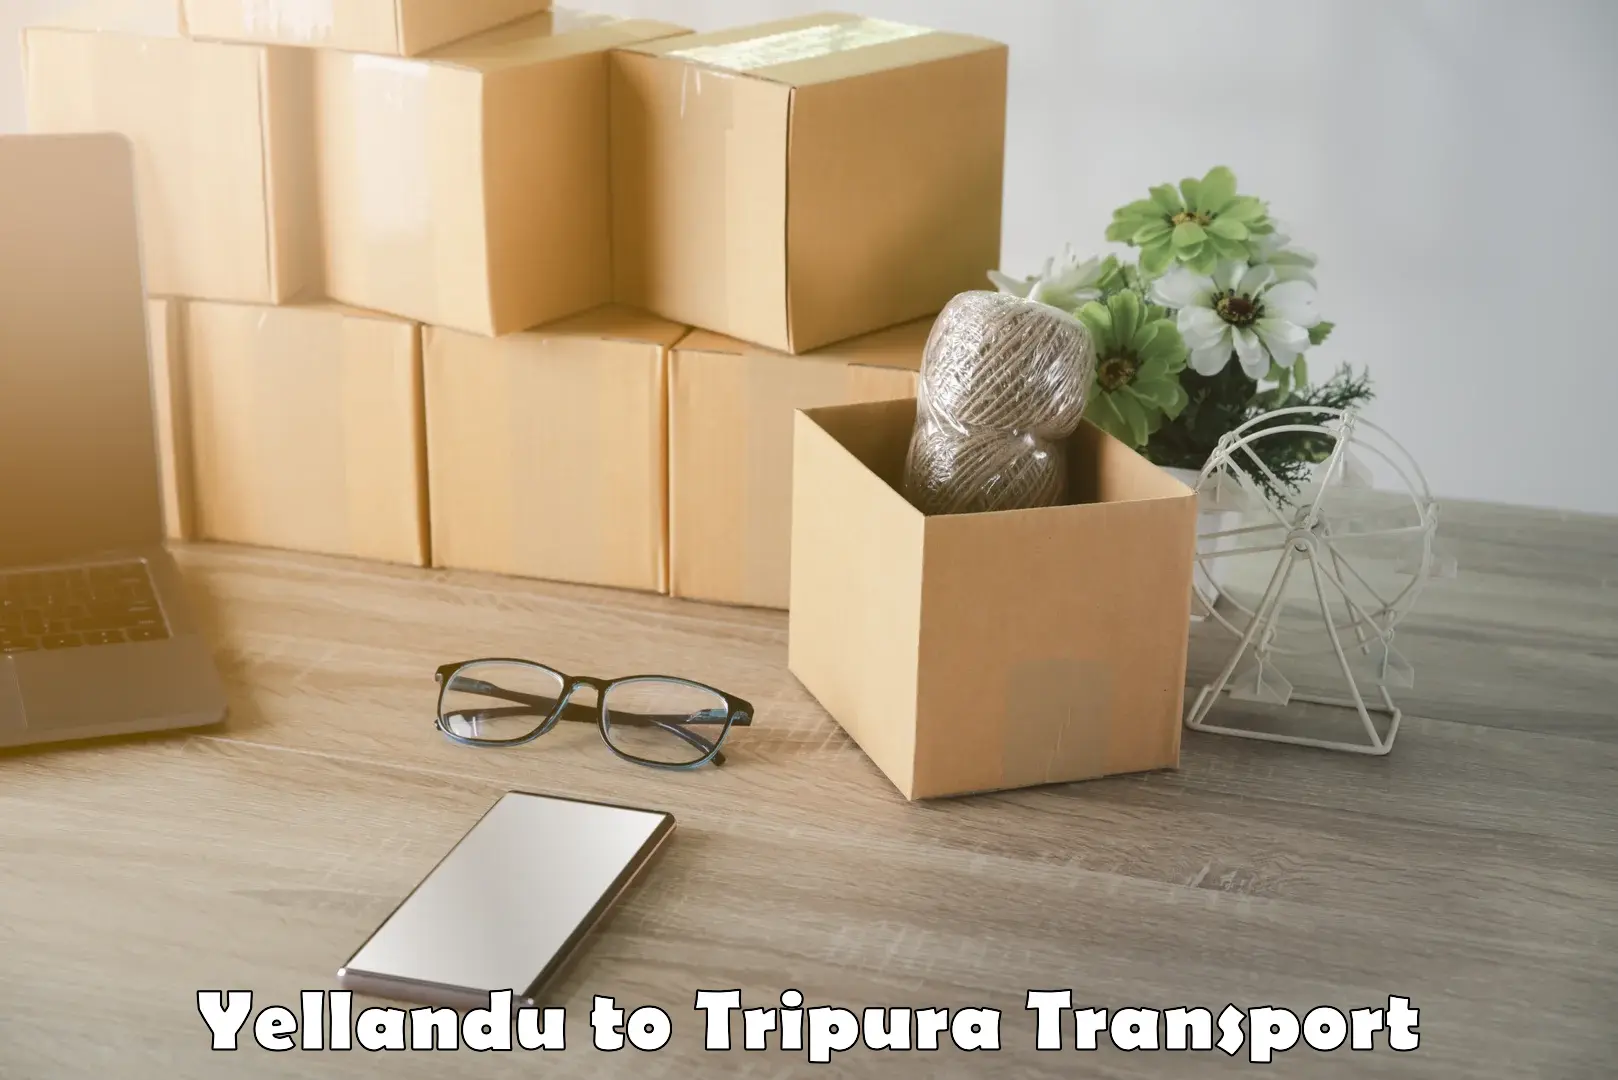 Pick up transport service Yellandu to South Tripura